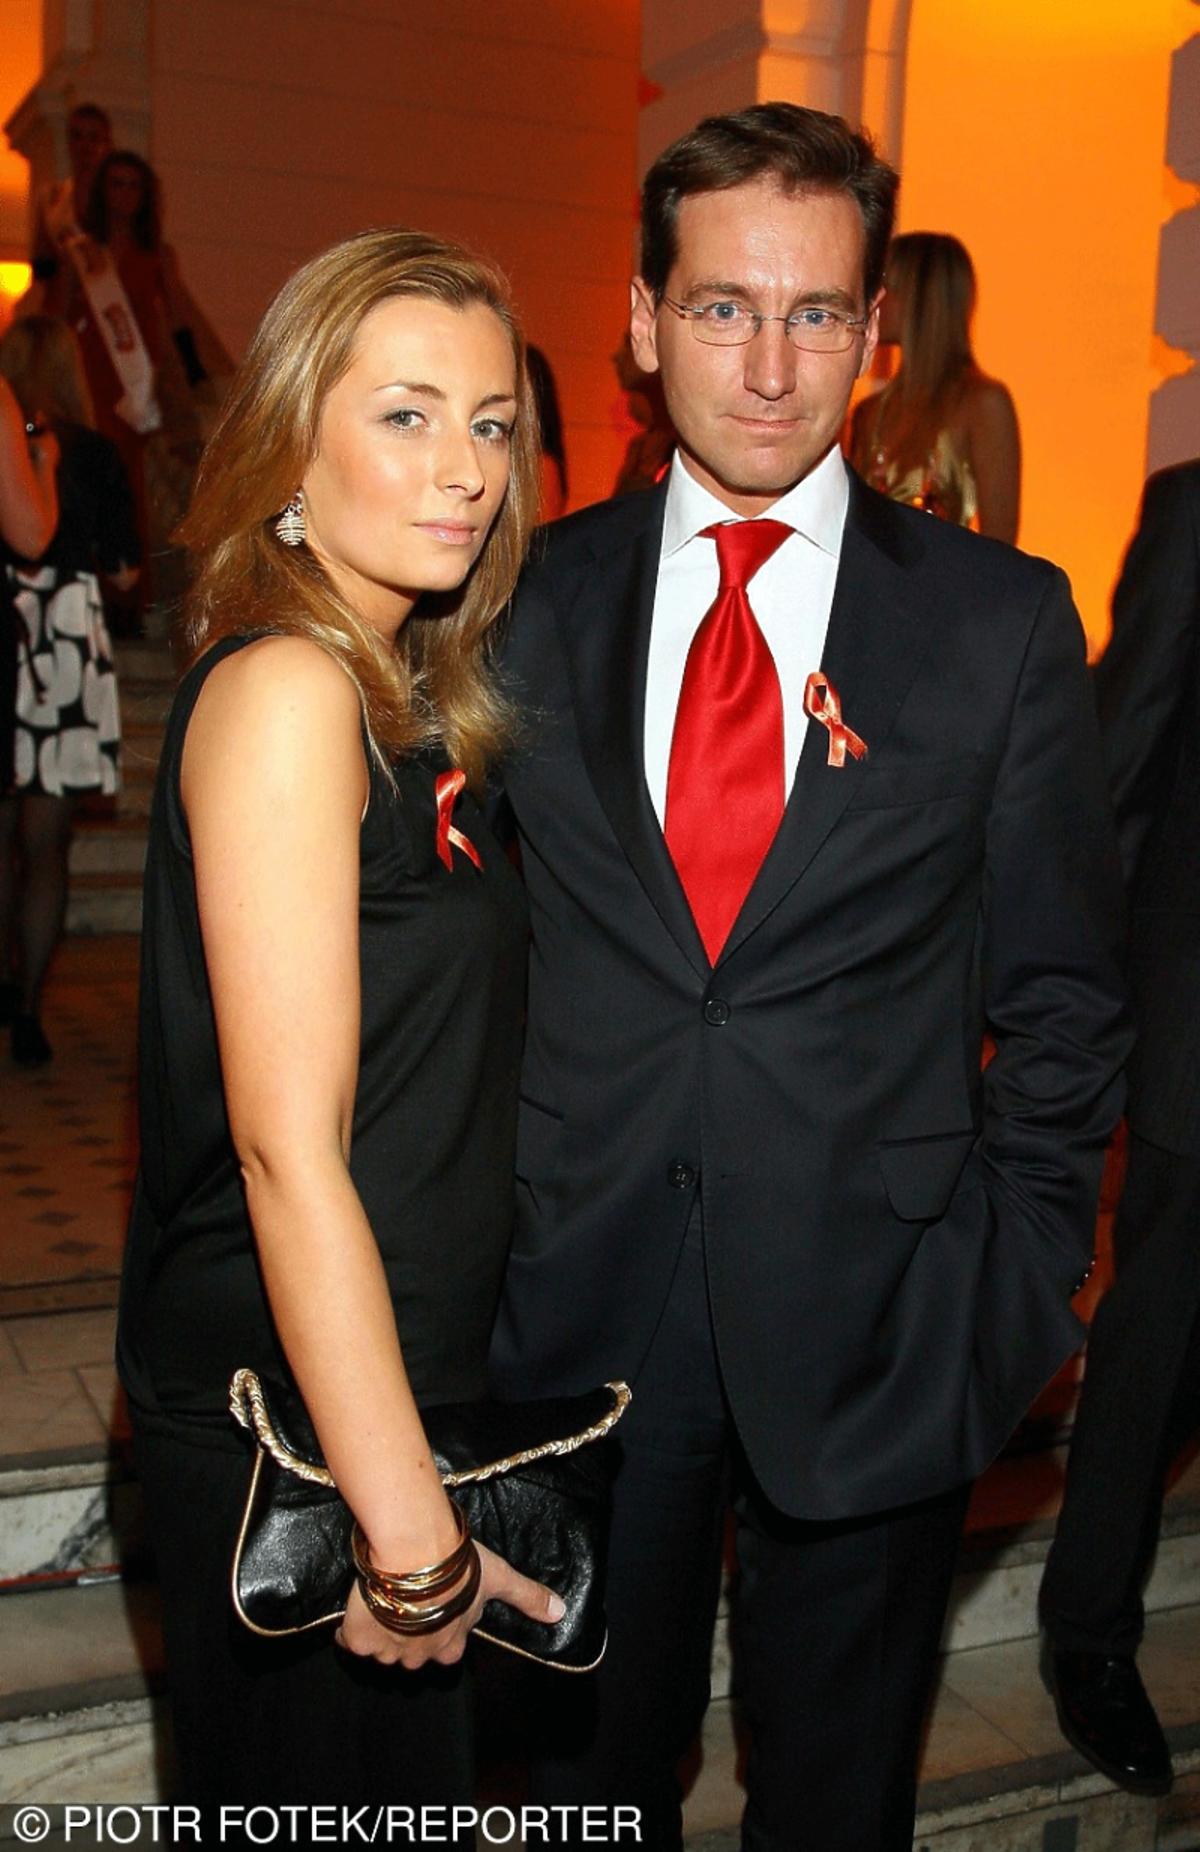 Piotr Kraśko w garniturze z czerwonym krawatem, Karolina Ferenstein z czarnej sukni